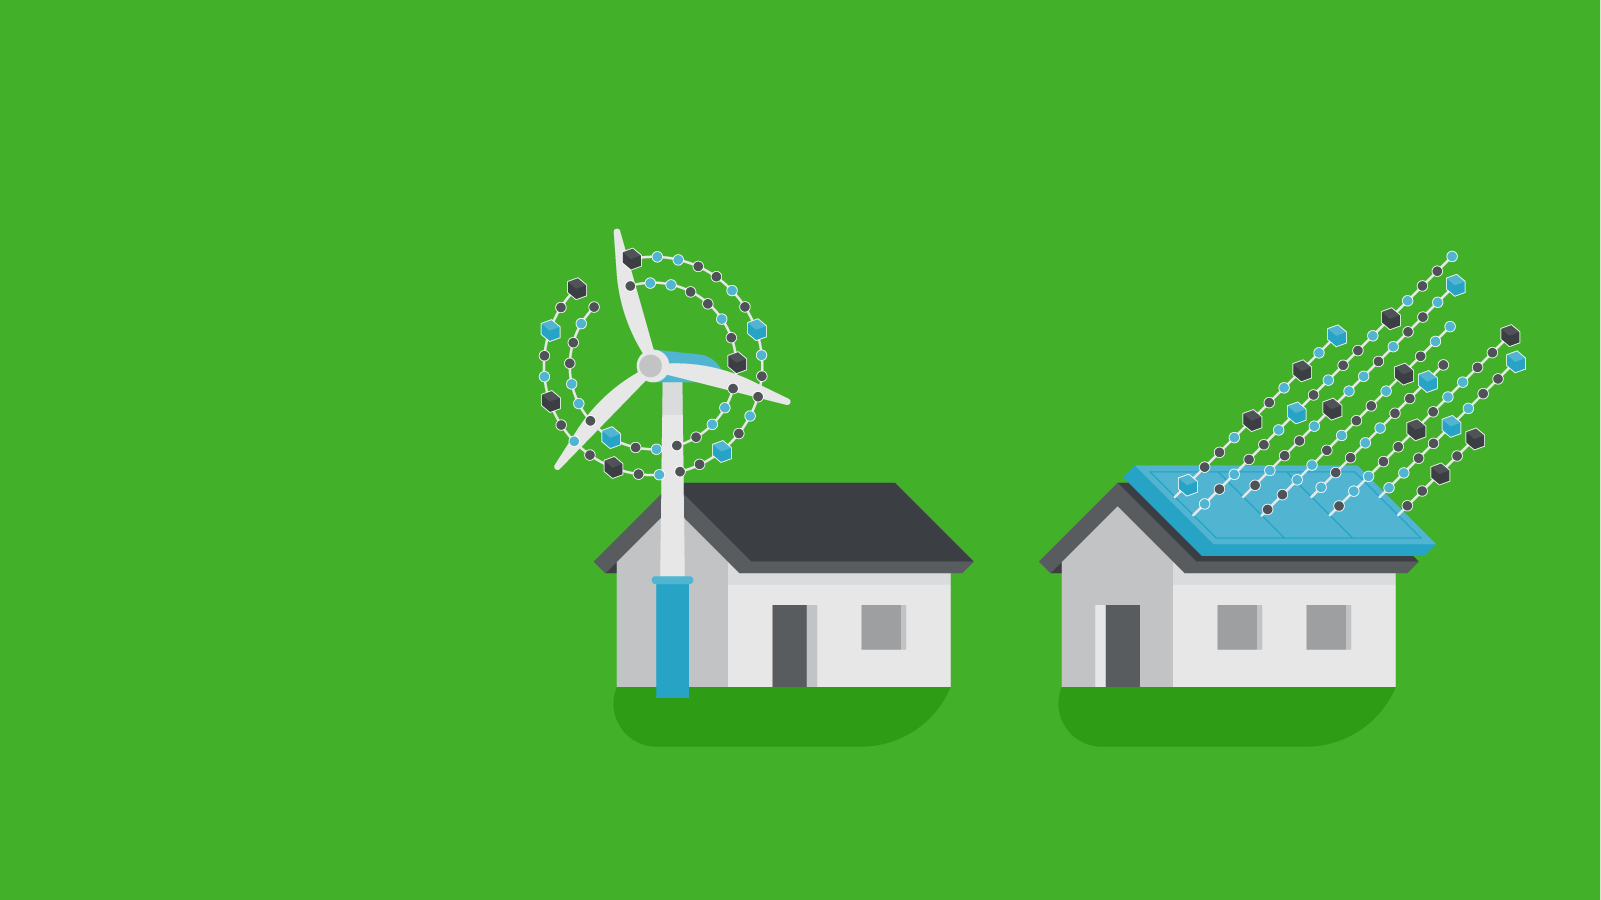 Huse der bruger vind- eller solenergi